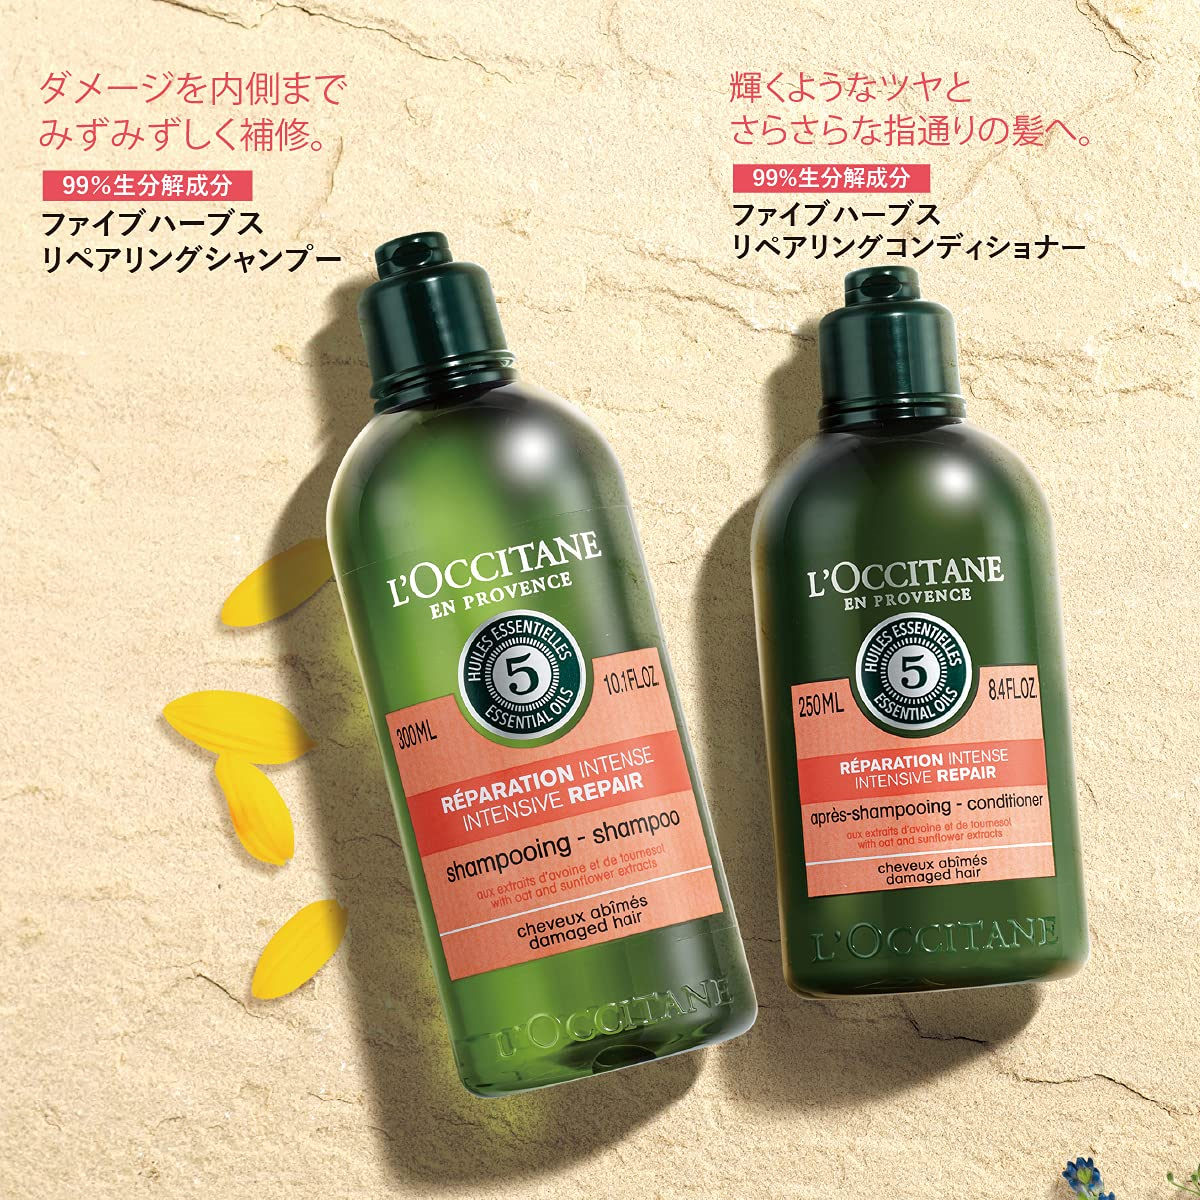 天然无硅油，秀发顺滑如丝！L’OCCITANE 强效修护洗发水250ml